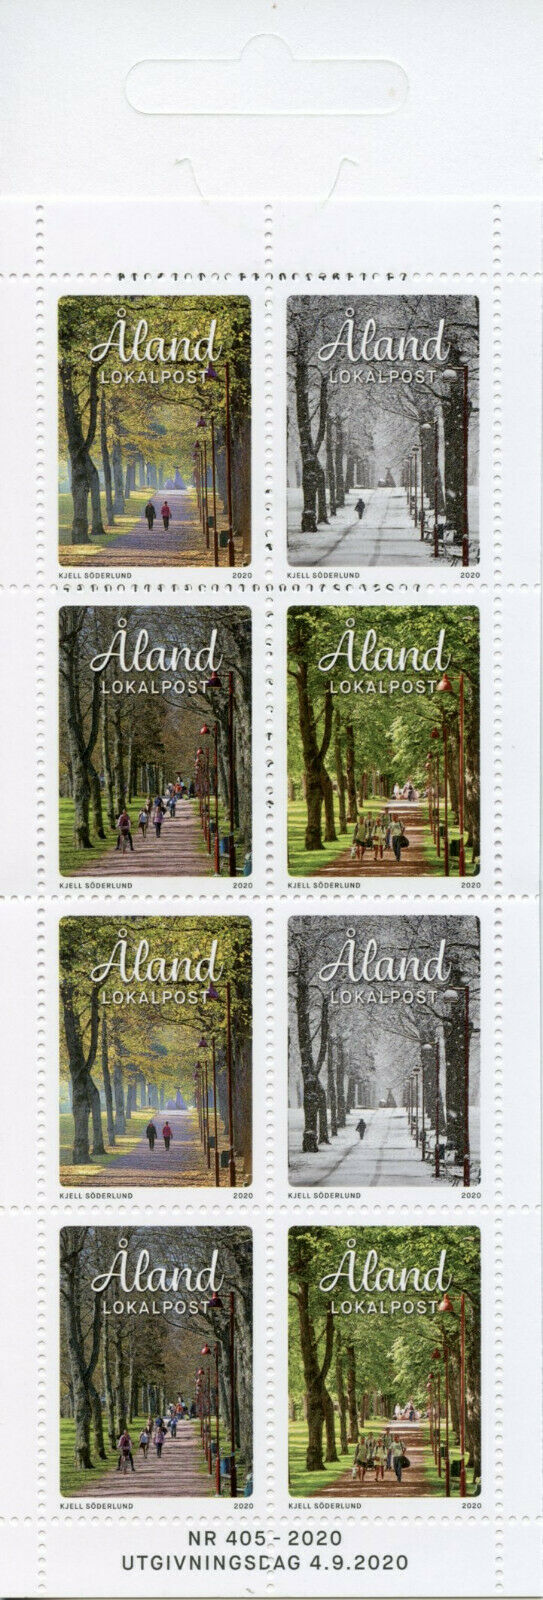 Aland Trees Stamps 2020 MNH Four Seasons Nature Landscapes 8v Booklet